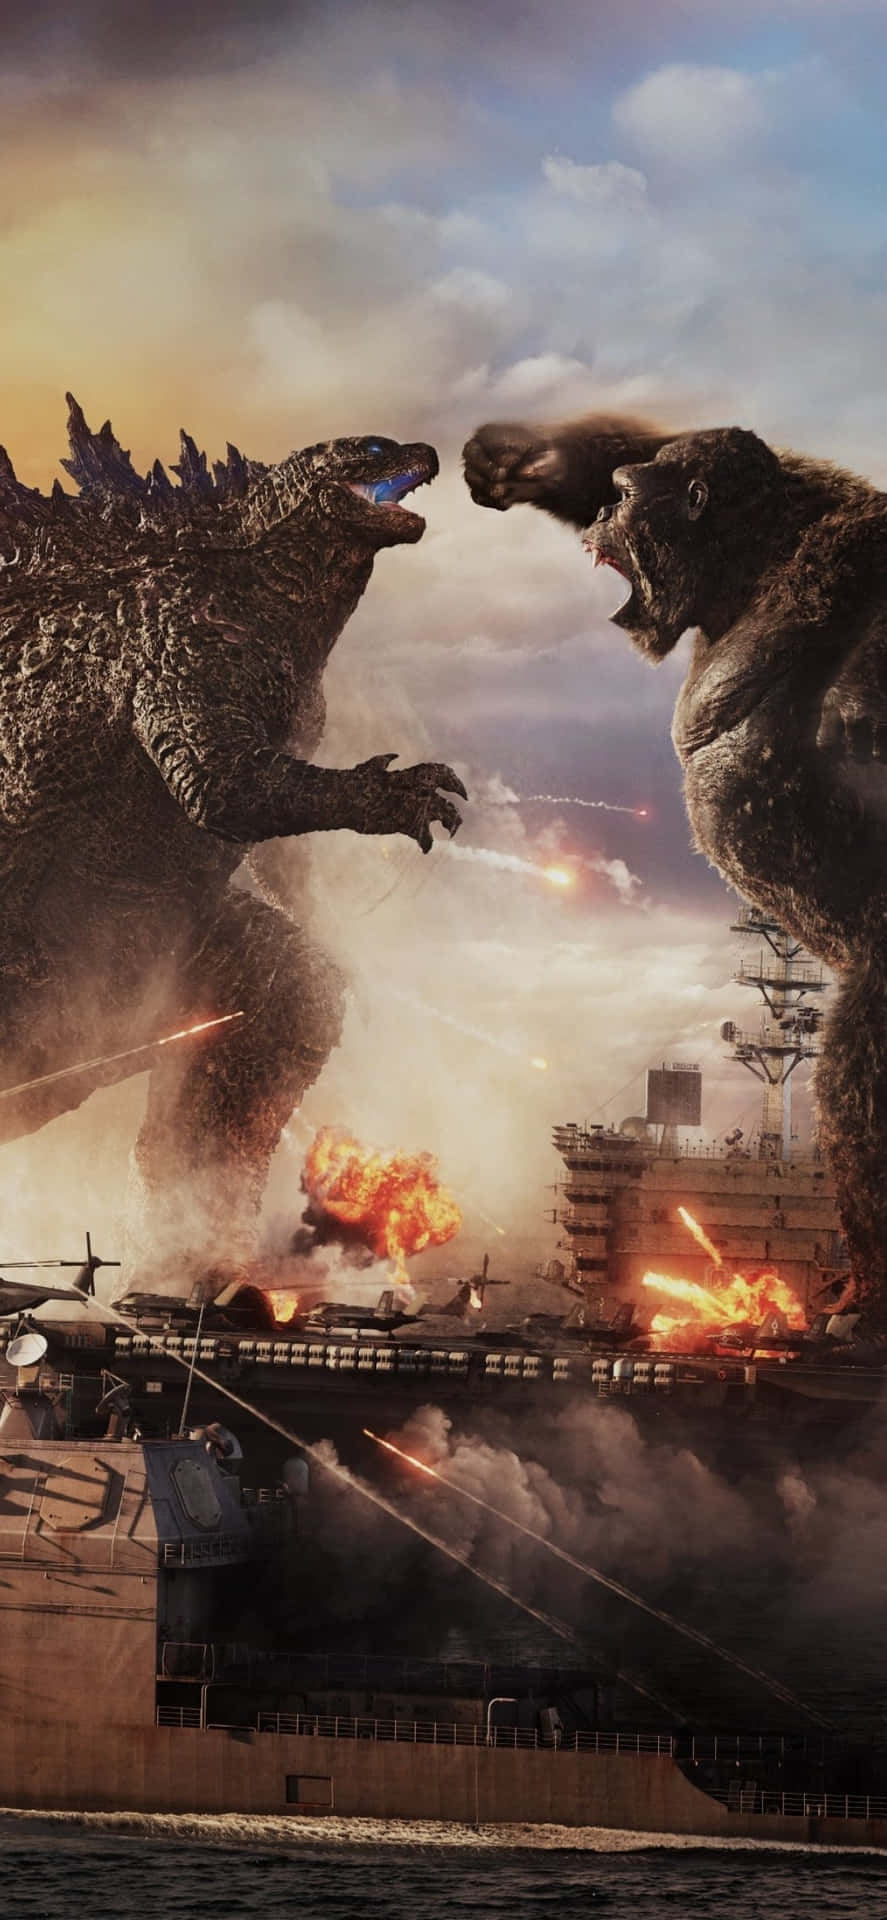 Epic Battle Unleashed - Godzilla Vs Kong